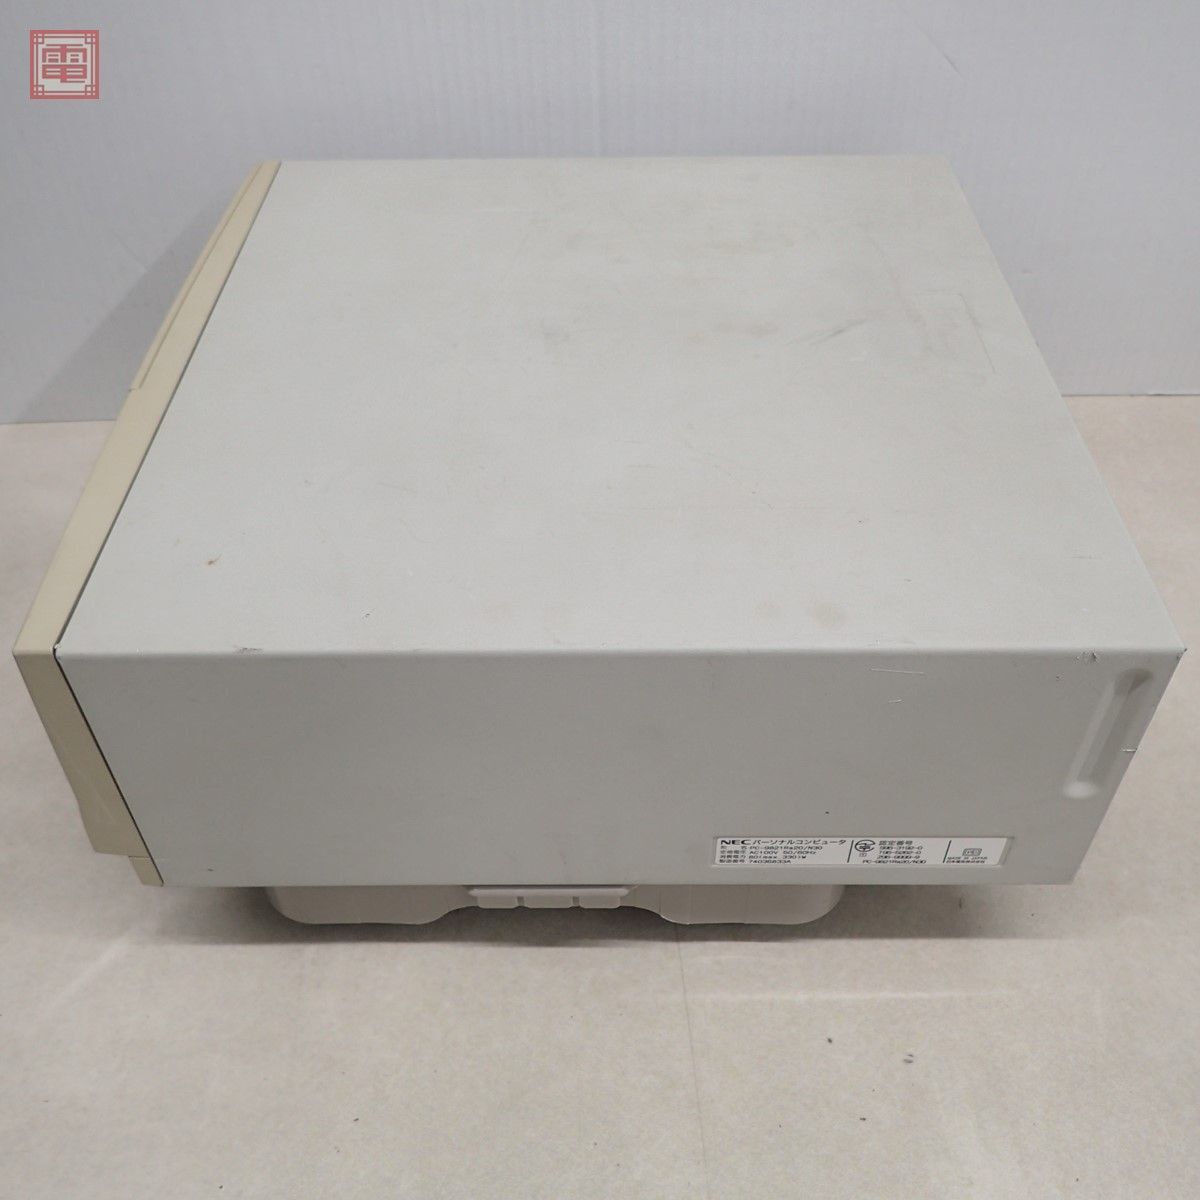 NEC PC-9821Ra20/N30 корпус Япония электрический HDD нет электризация только проверка детали брать .. пожалуйста [40